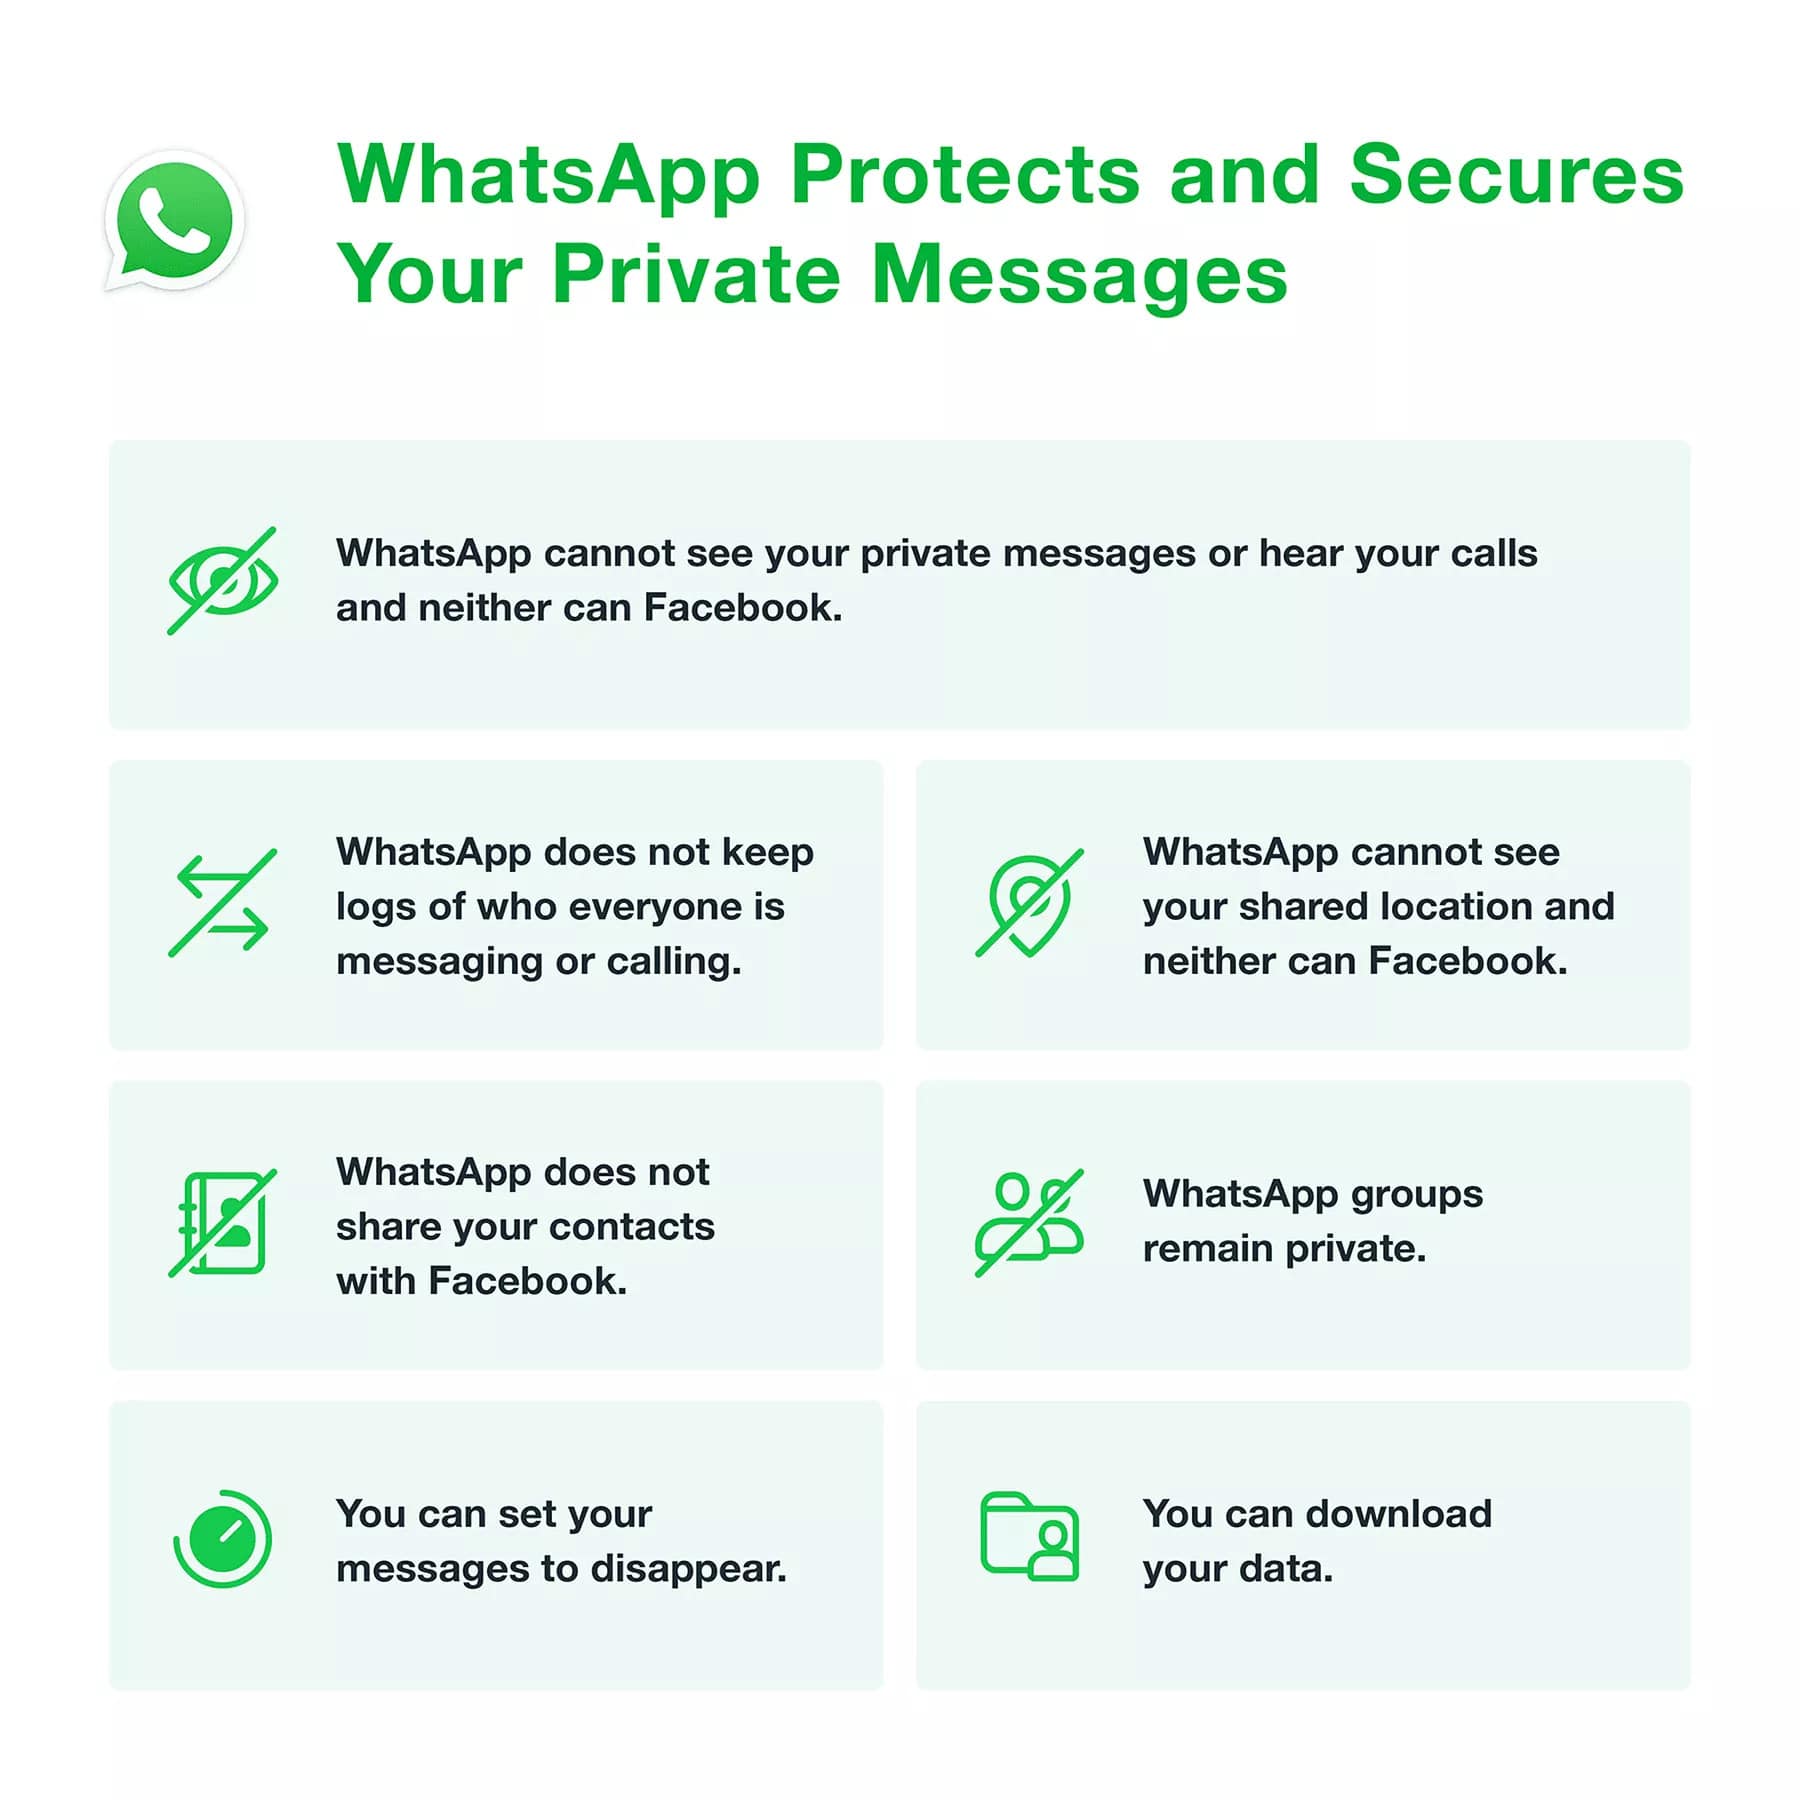 WhatsApp klärt neue Datenschutzrichtlinie und sagt, dass Nachrichten an Freunde und Familie sicher sind 295